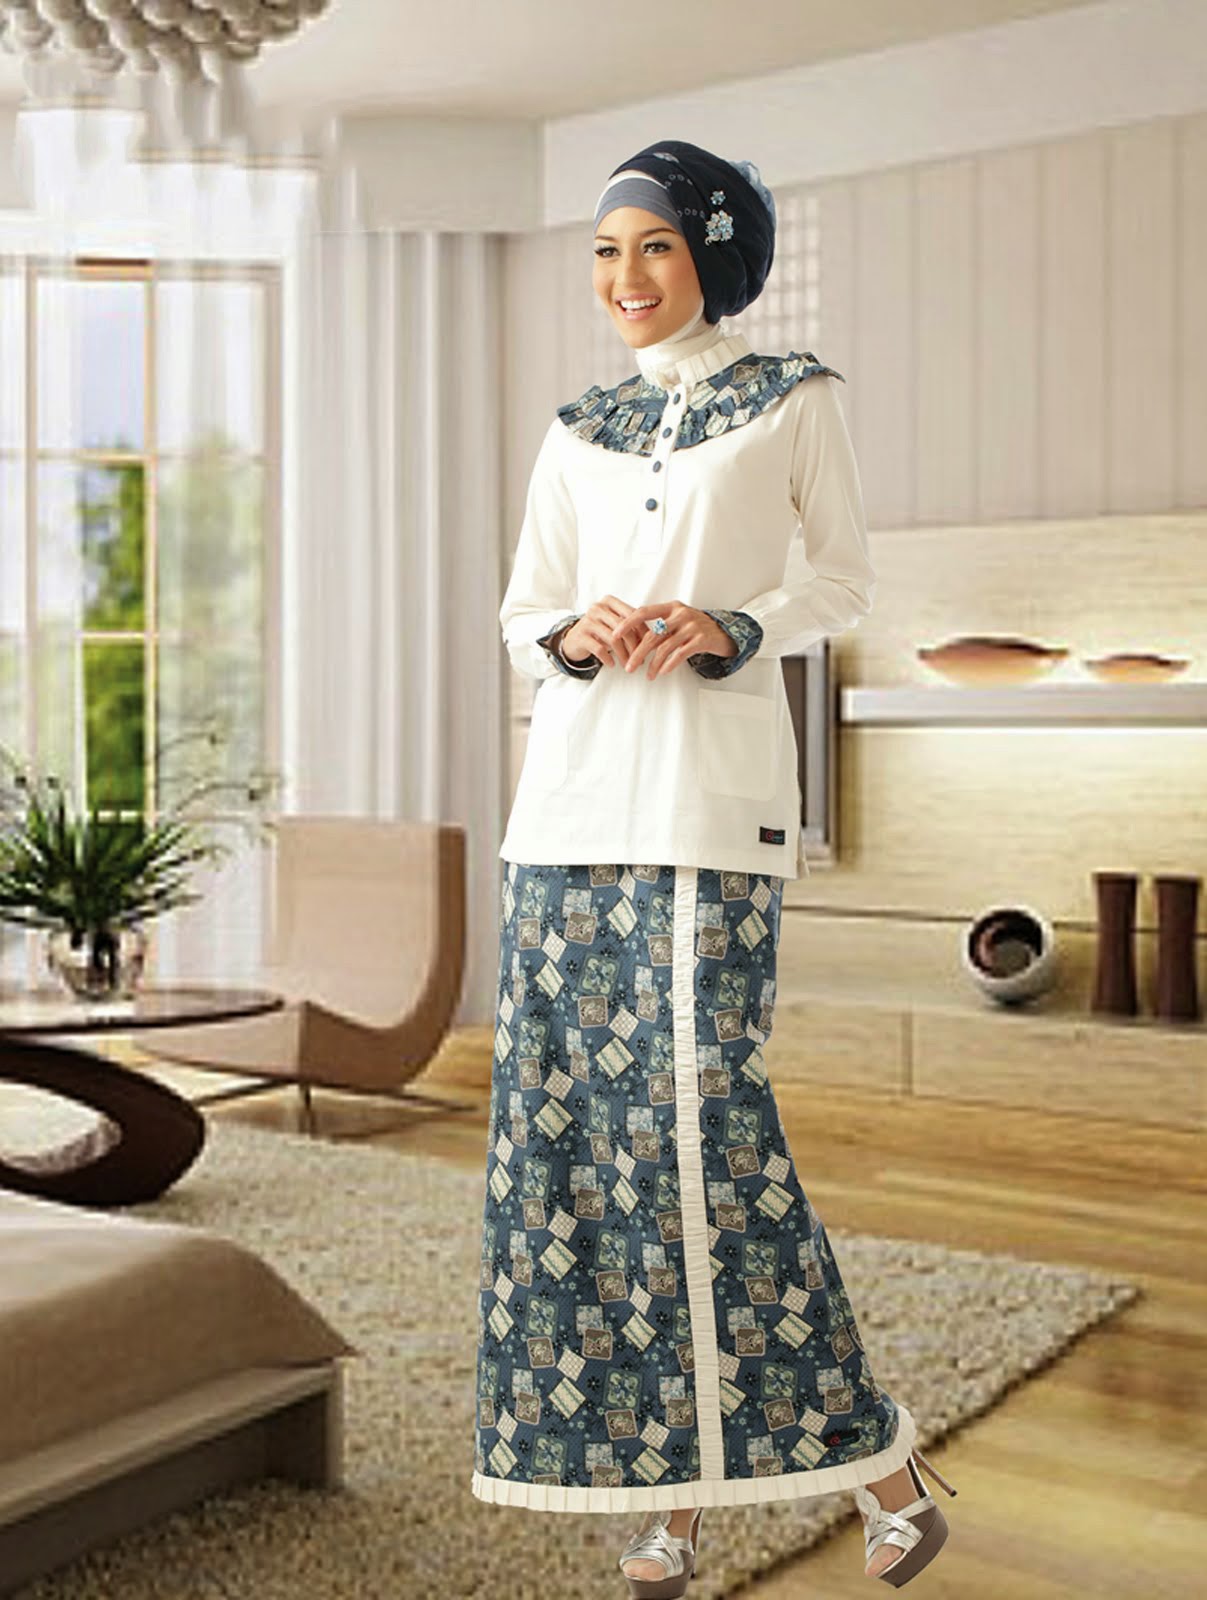  Baju Gamis Batik Yang Cantik Info Model Baju Gamis 